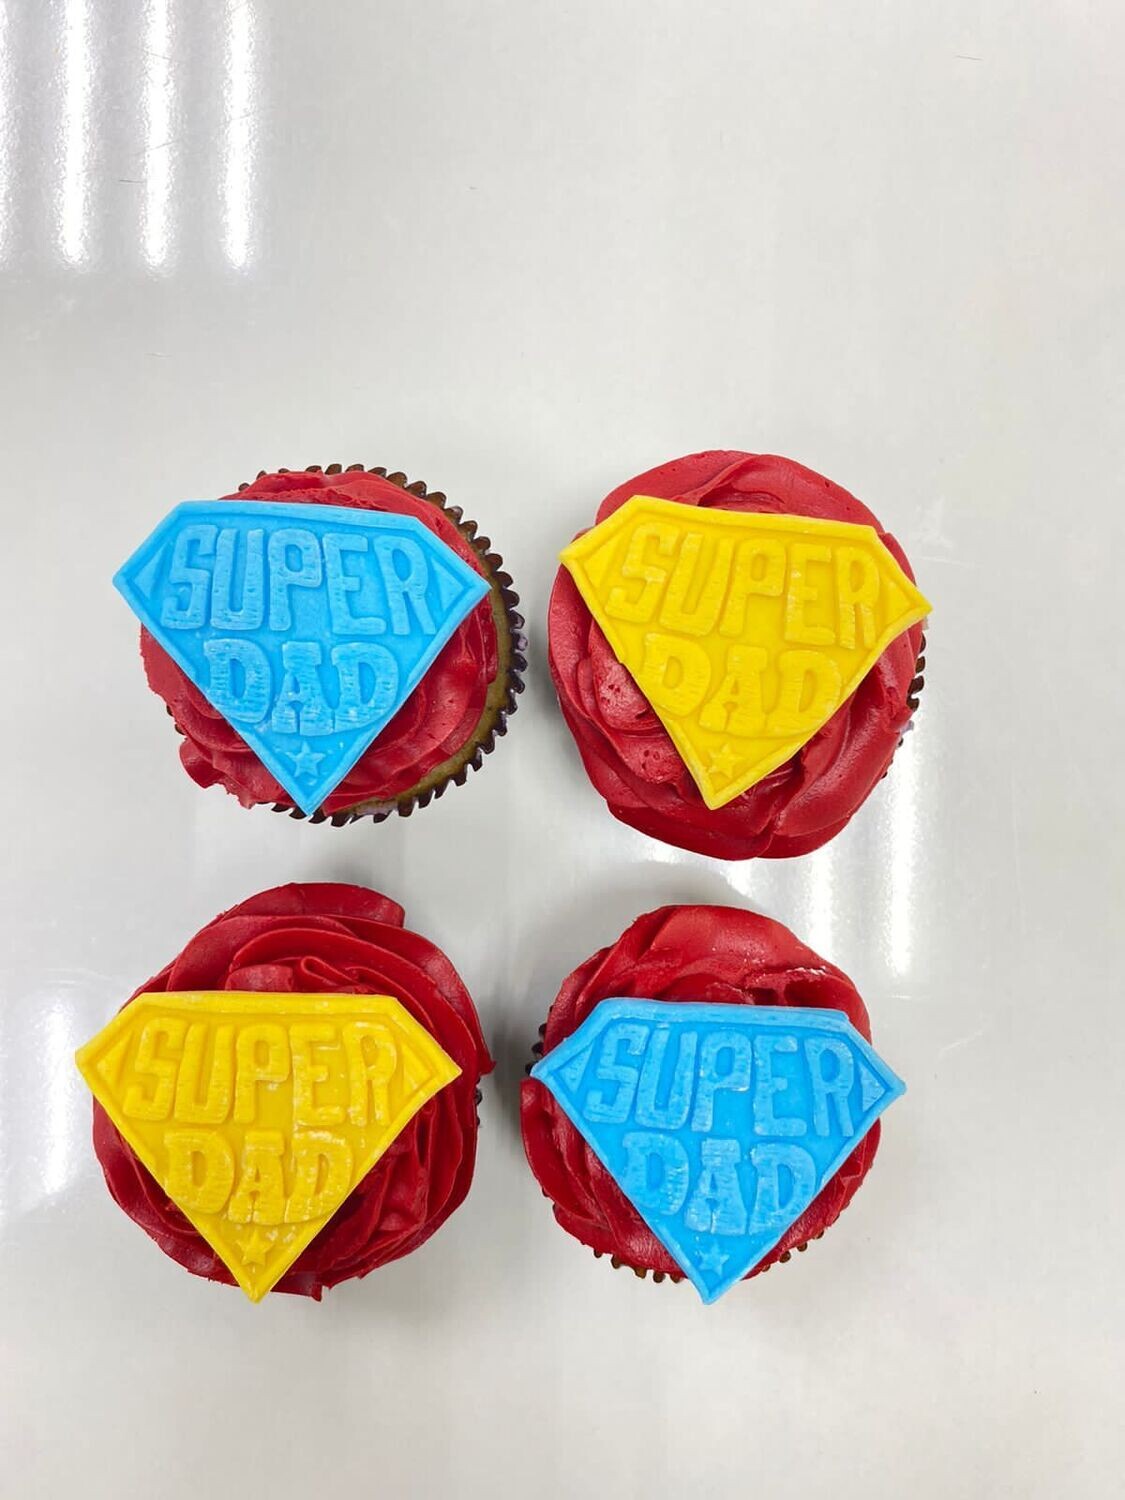 Super Dad Cupcakes